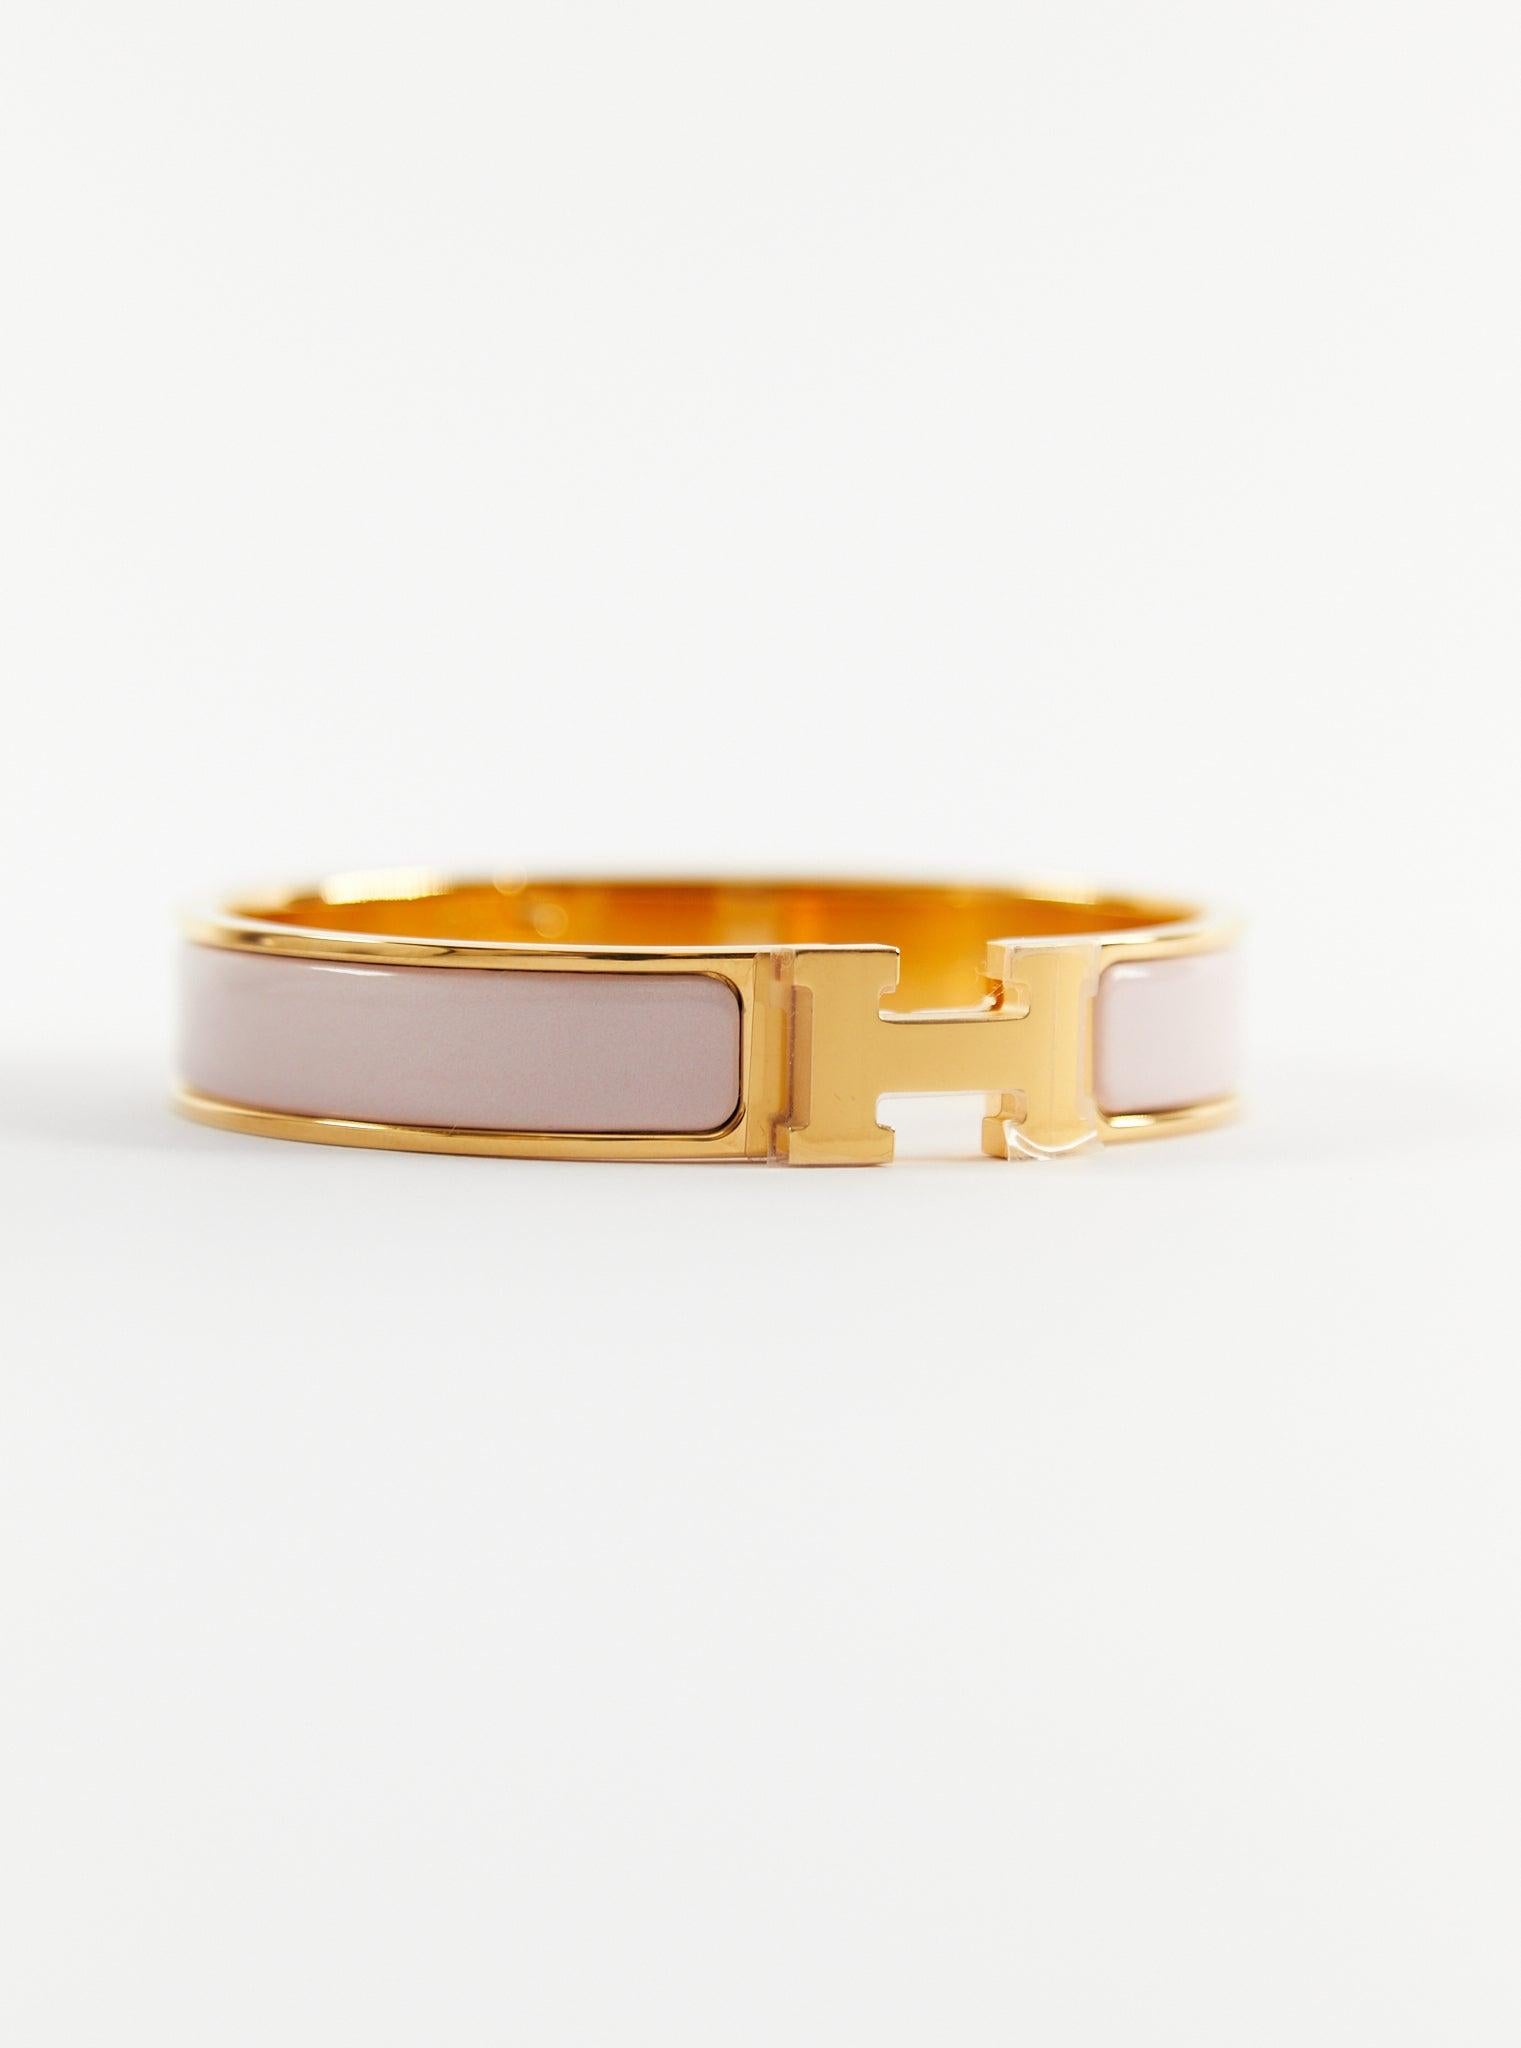 Hermès Clic H PM Armband in Rose Candeur & Gold

Größe des Handgelenks: 16.8 cm  Breite: 12 mm

Hergestellt in Frankreich